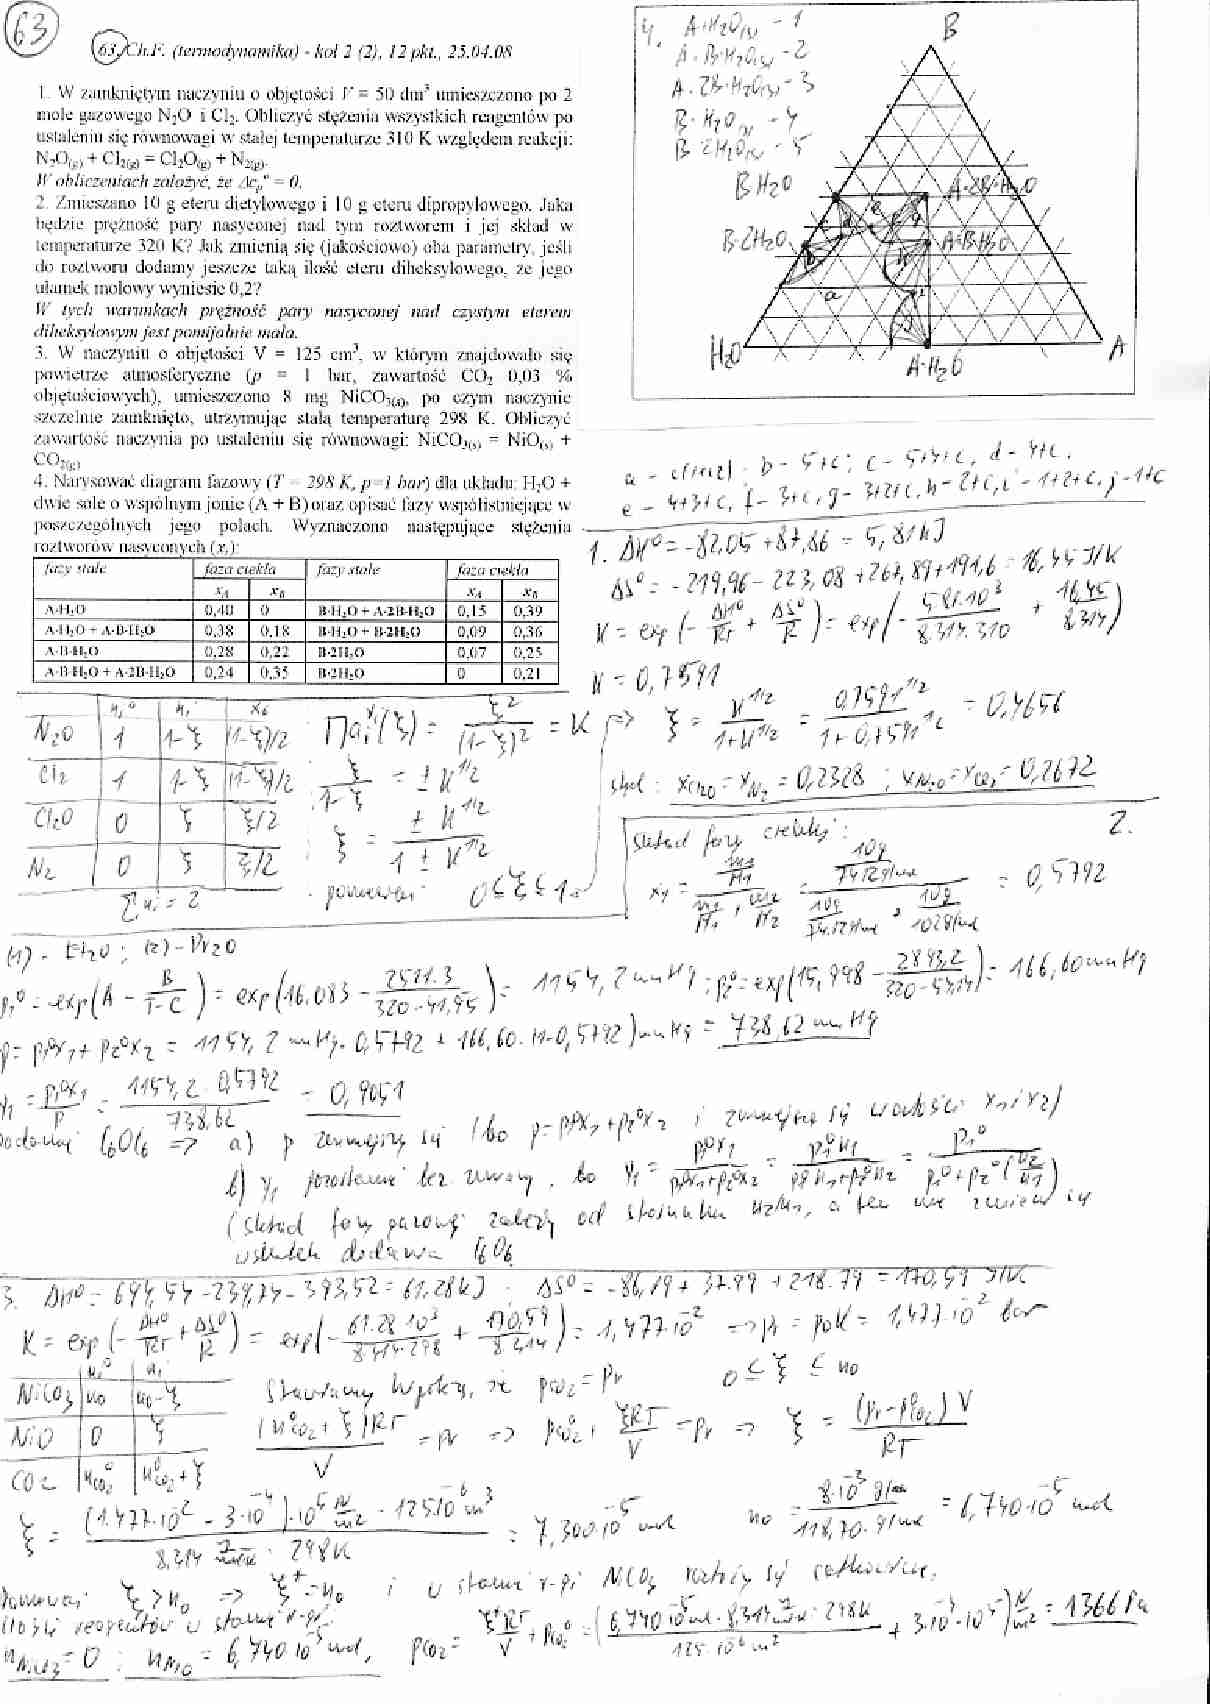 Termodynamika - ćwiczenia - strona 1